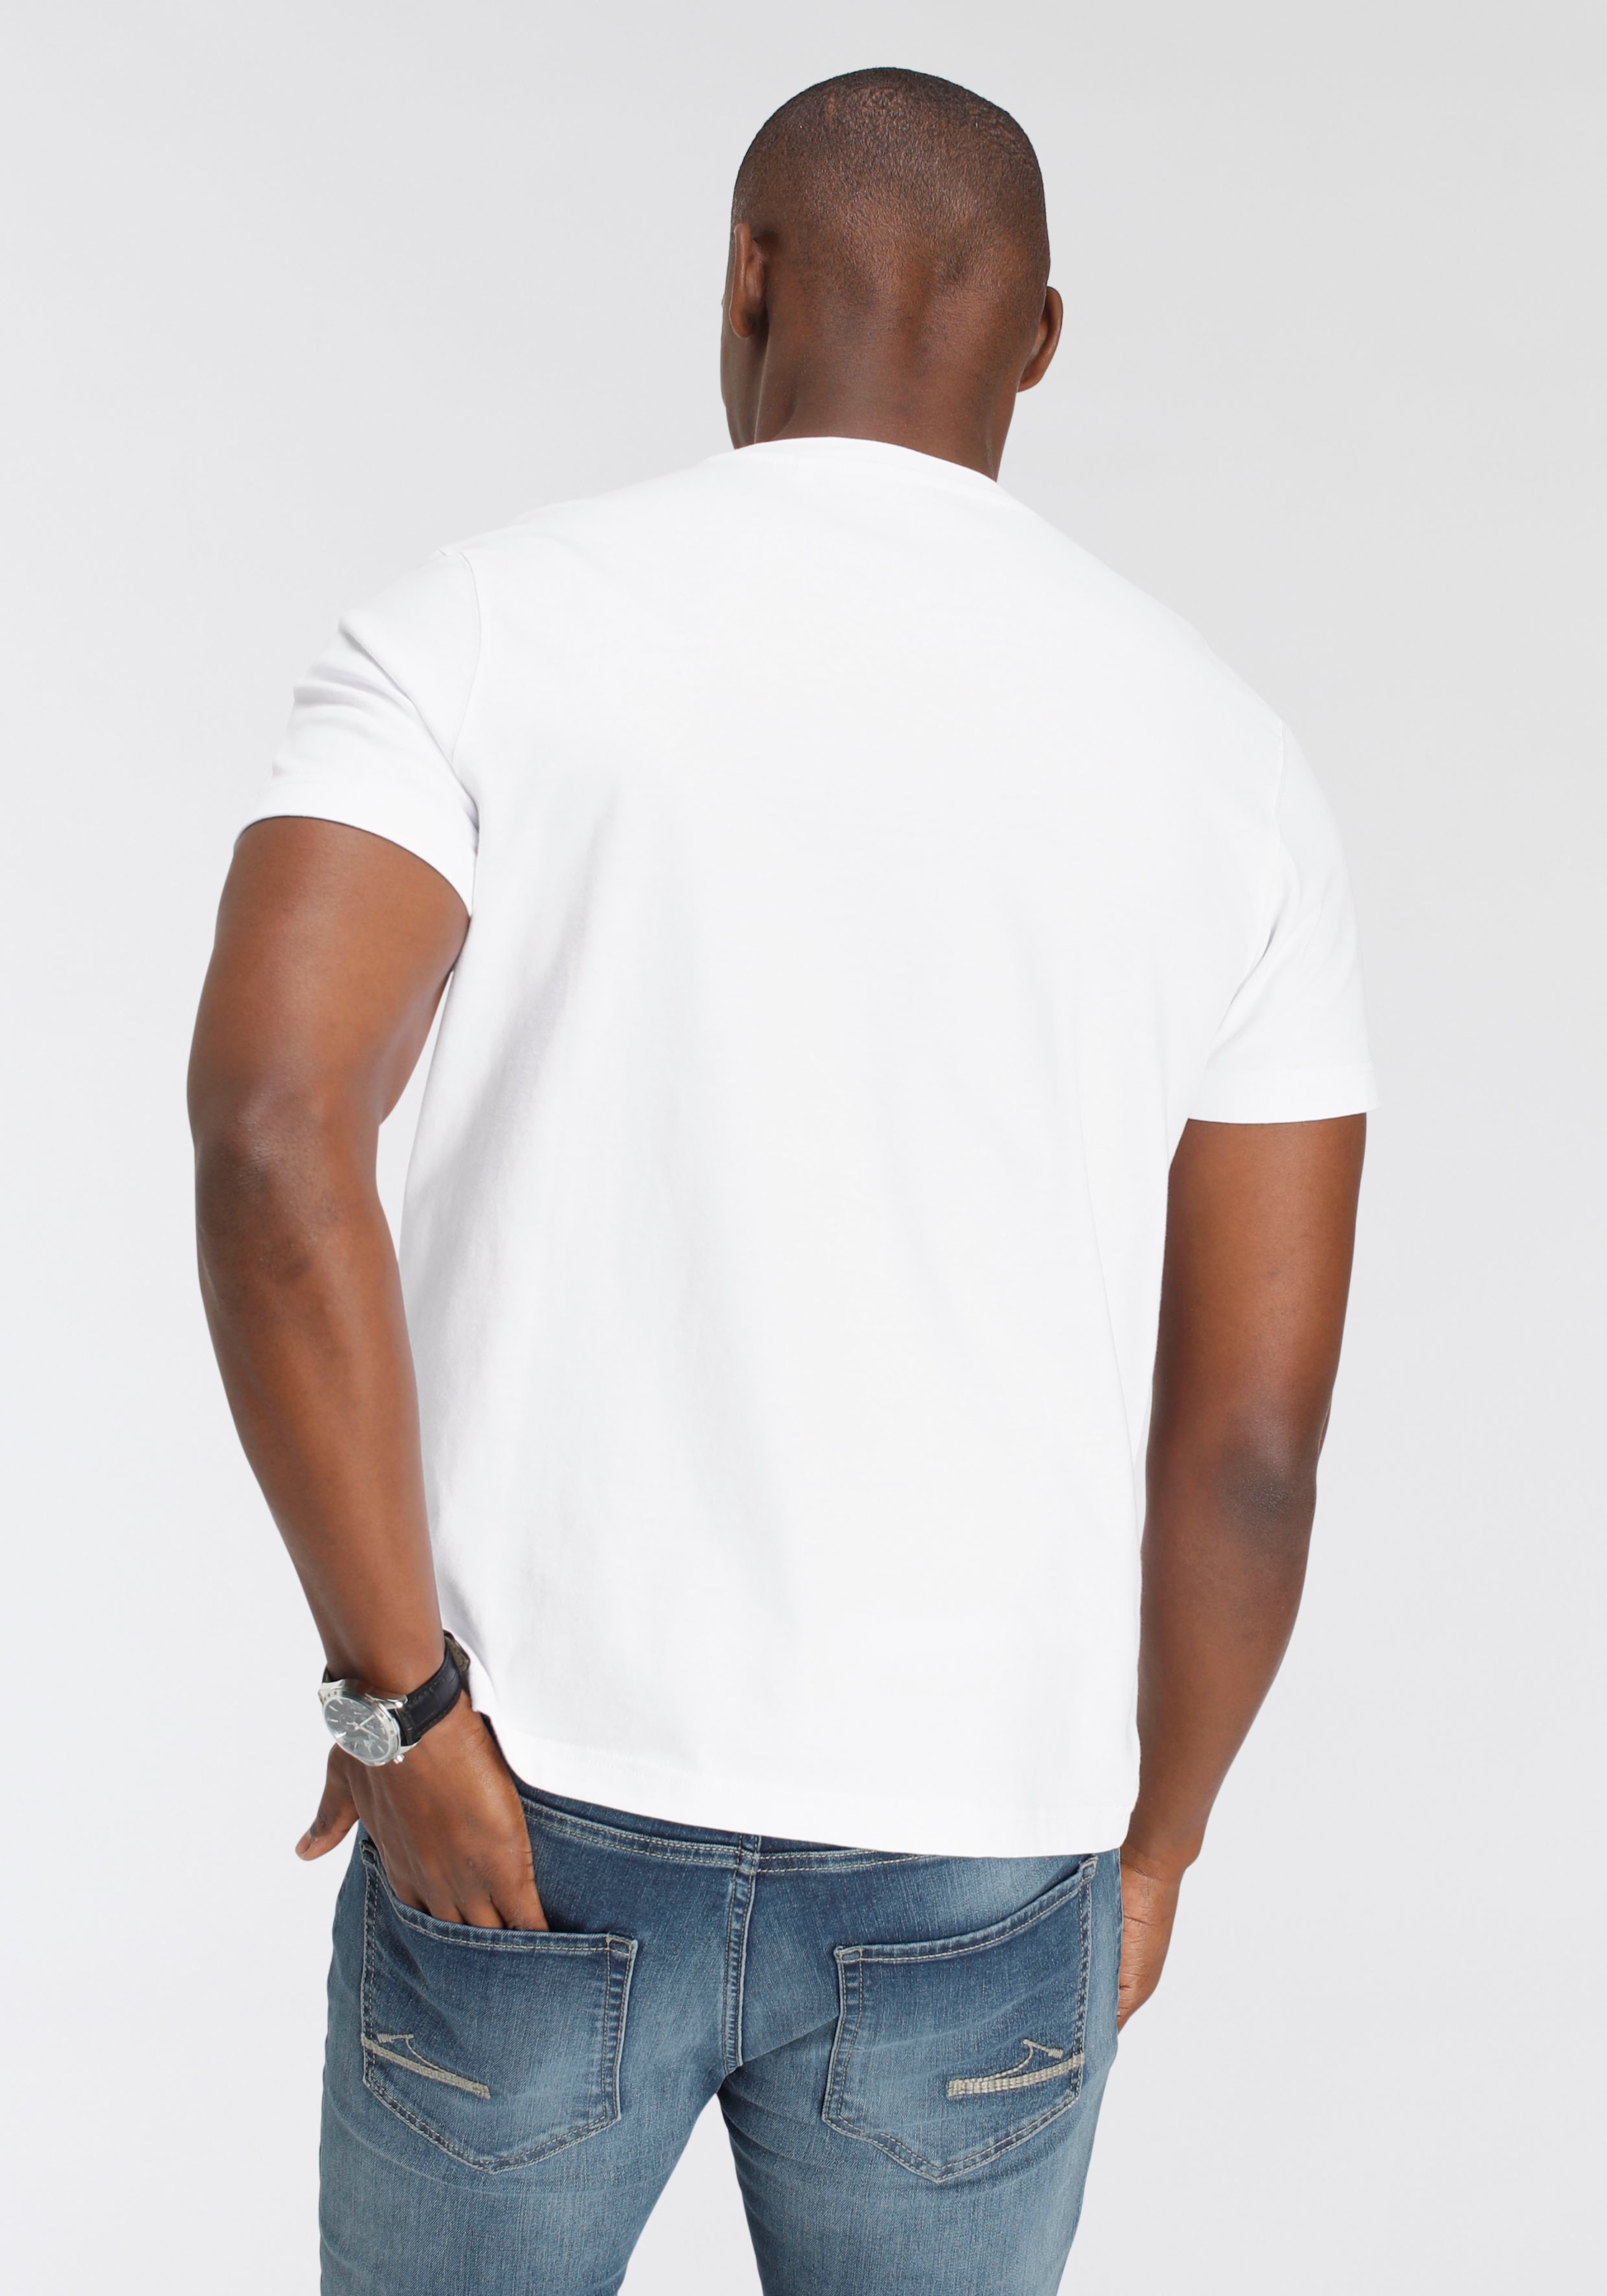 DELMAO T-Shirt, Brustprint kaufen modischem OTTO mit MARKE! - bei online NEUE